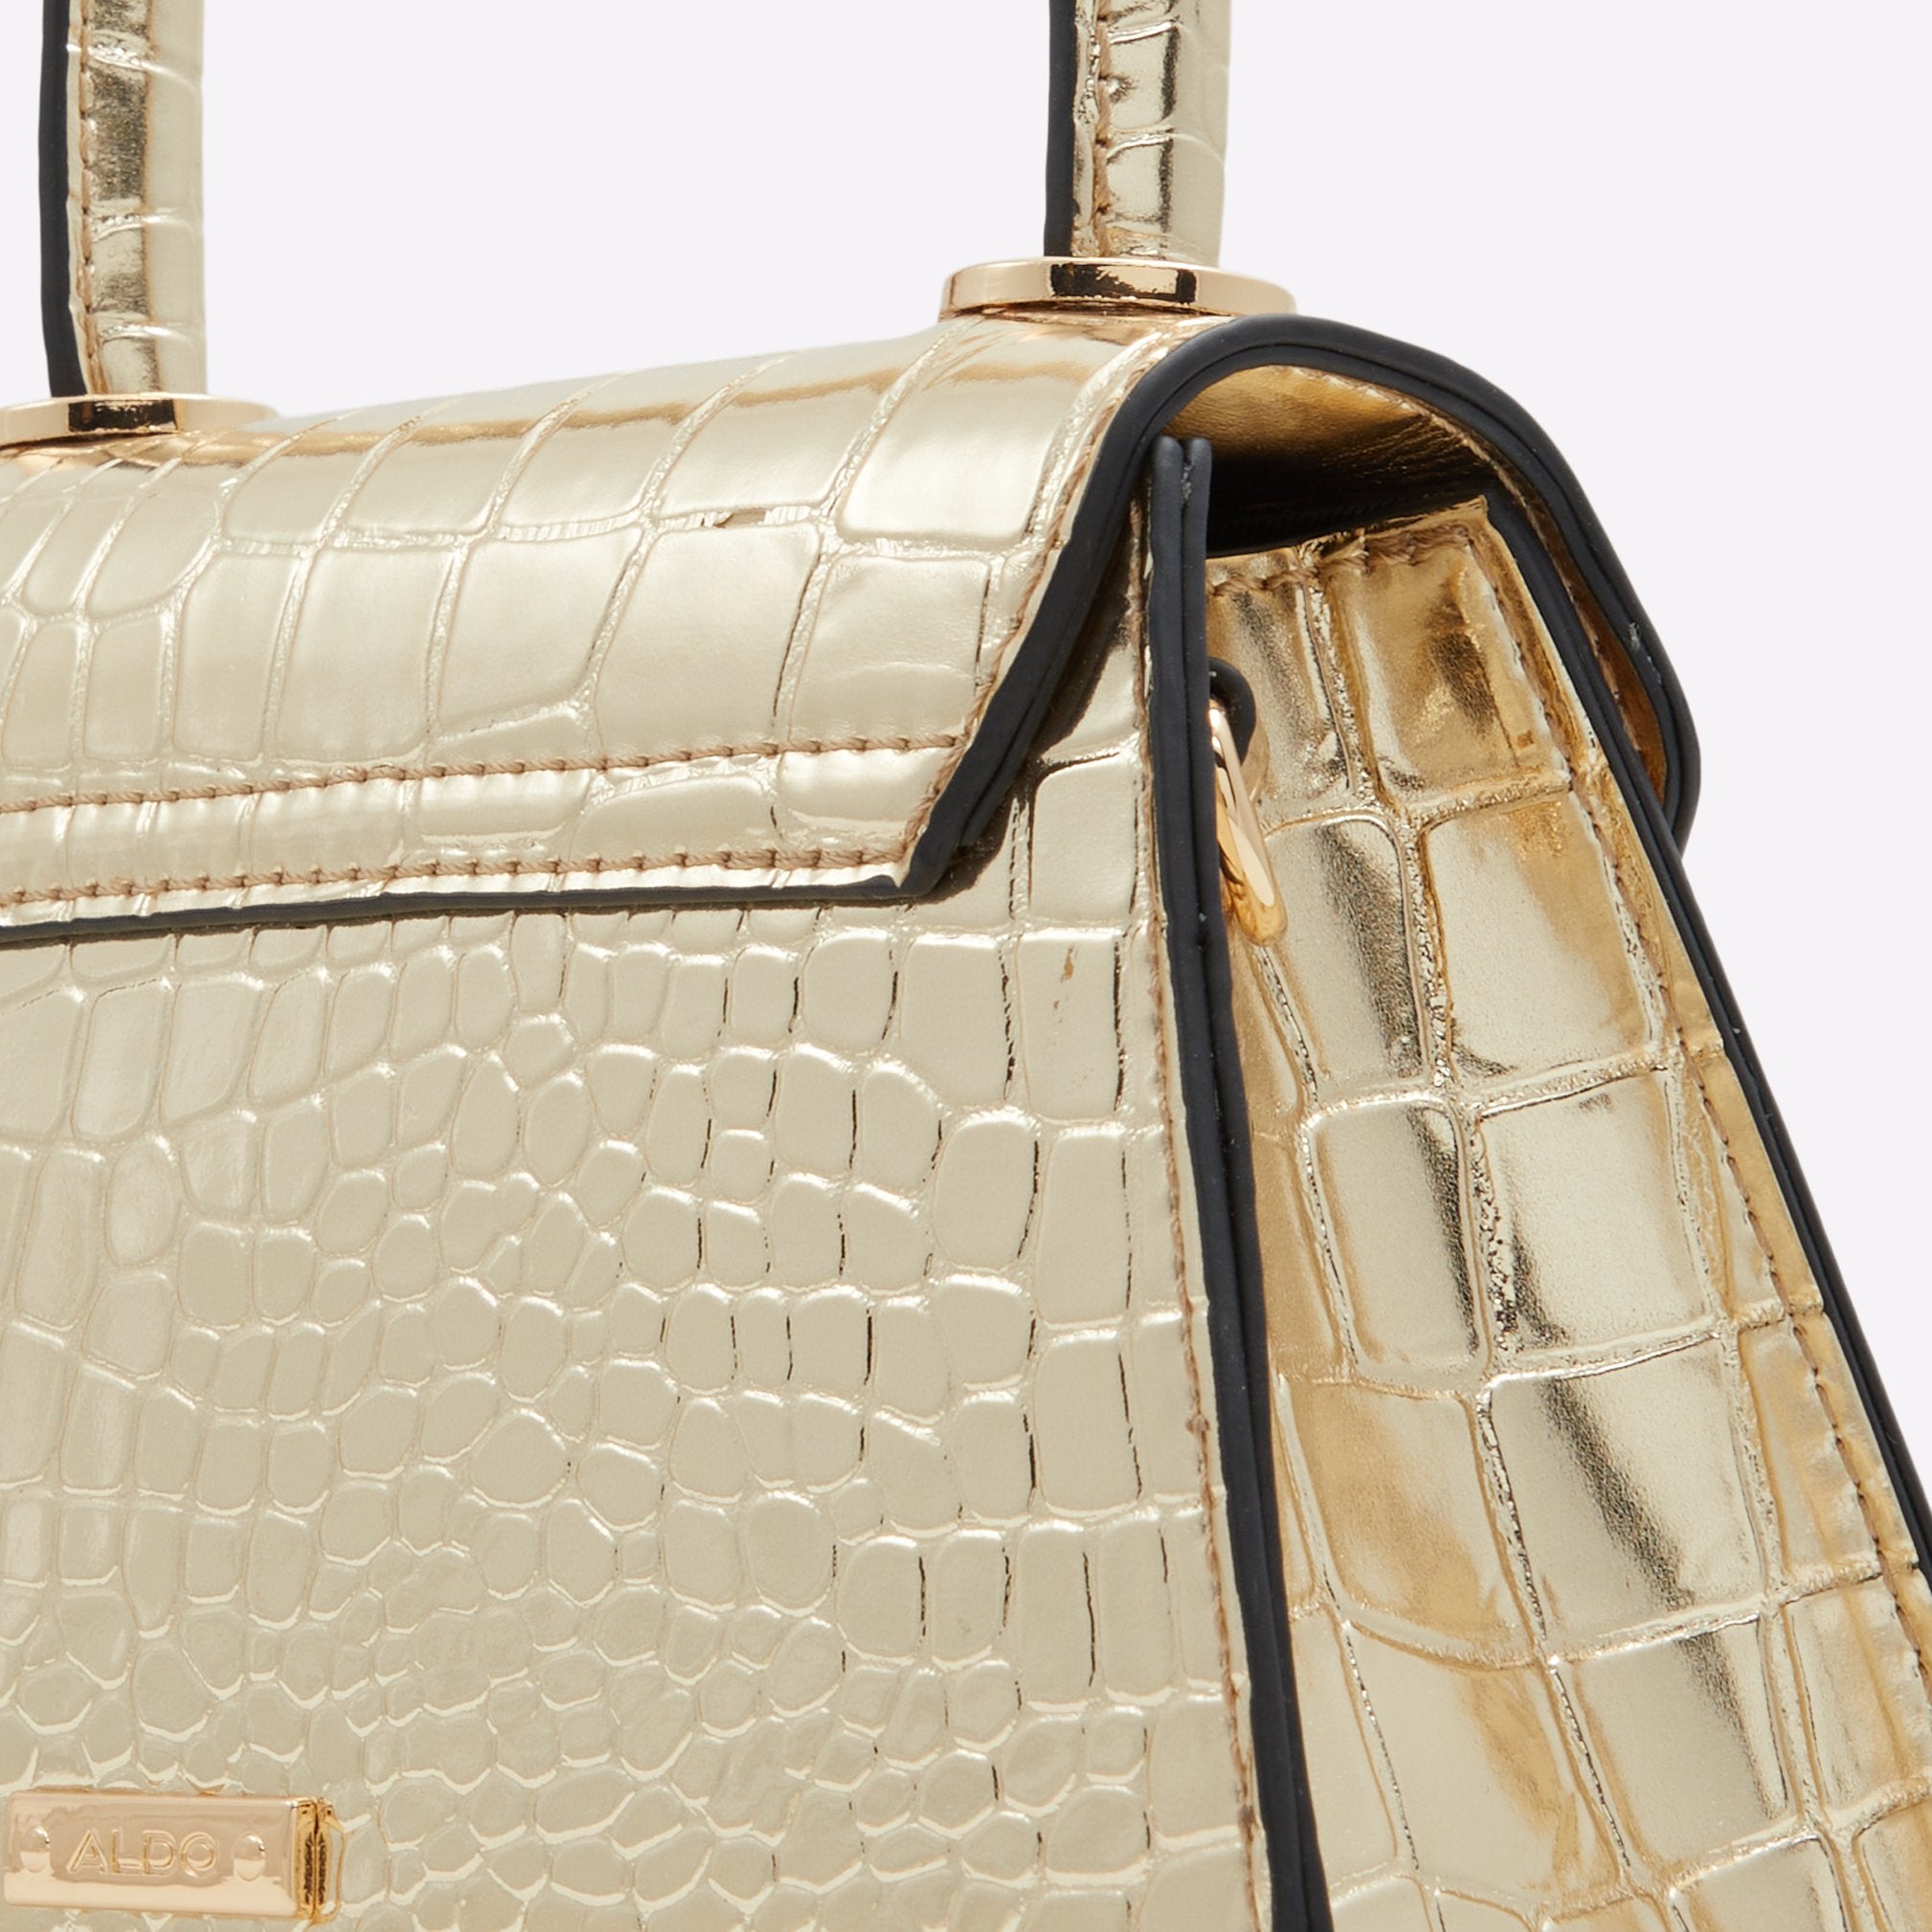 Rotana / Top Handle Bag Bag - Gold - ALDO KSA